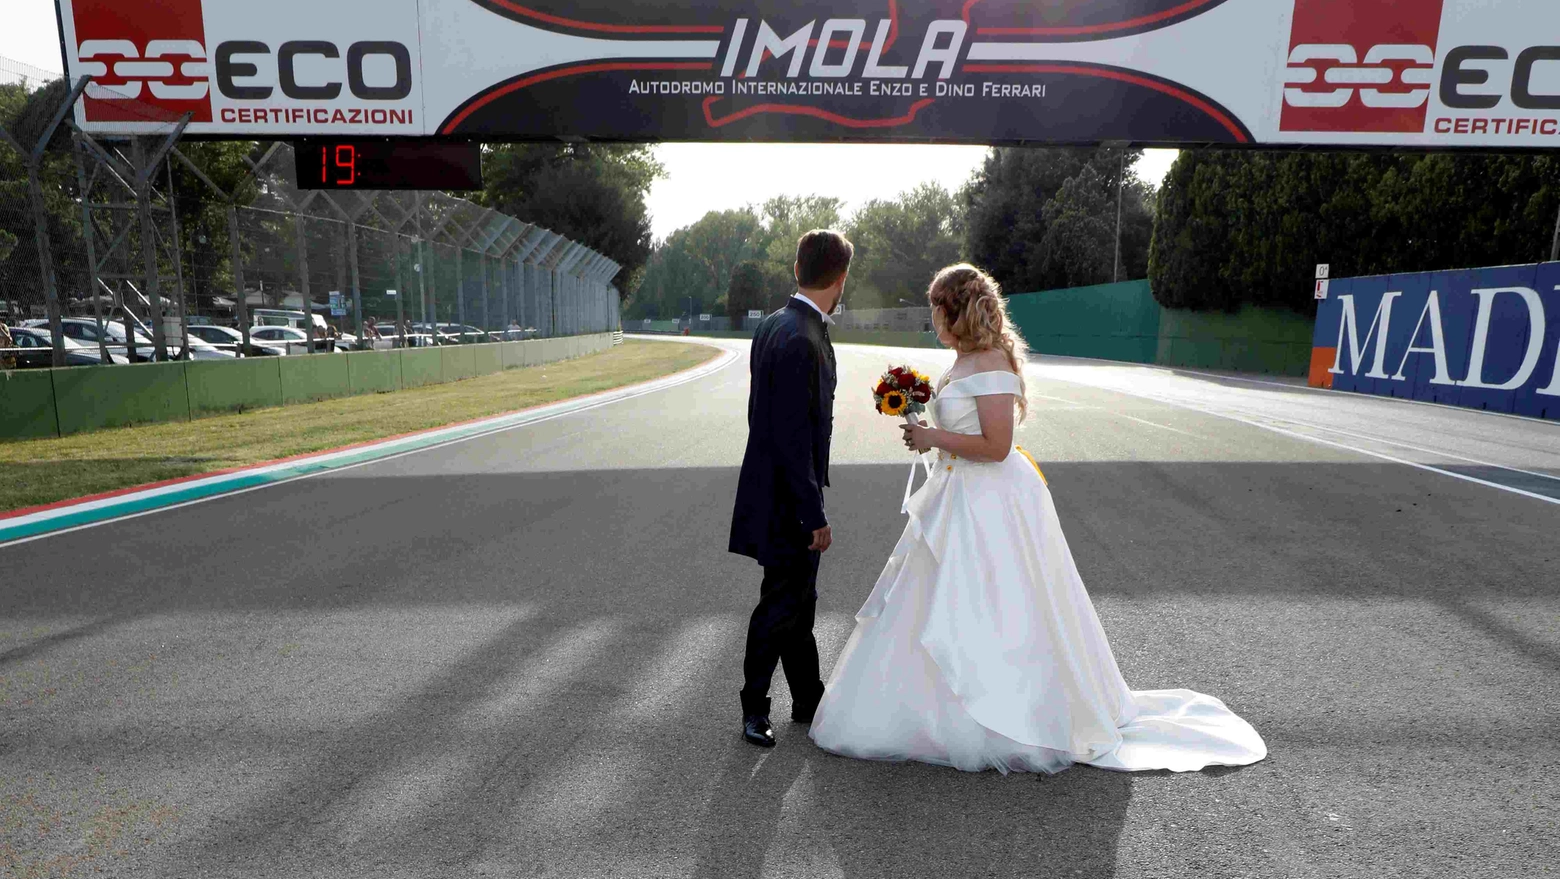 Matrimoni all’autodromo di Imola: costi e regole per dire il fatidico ‘sì’